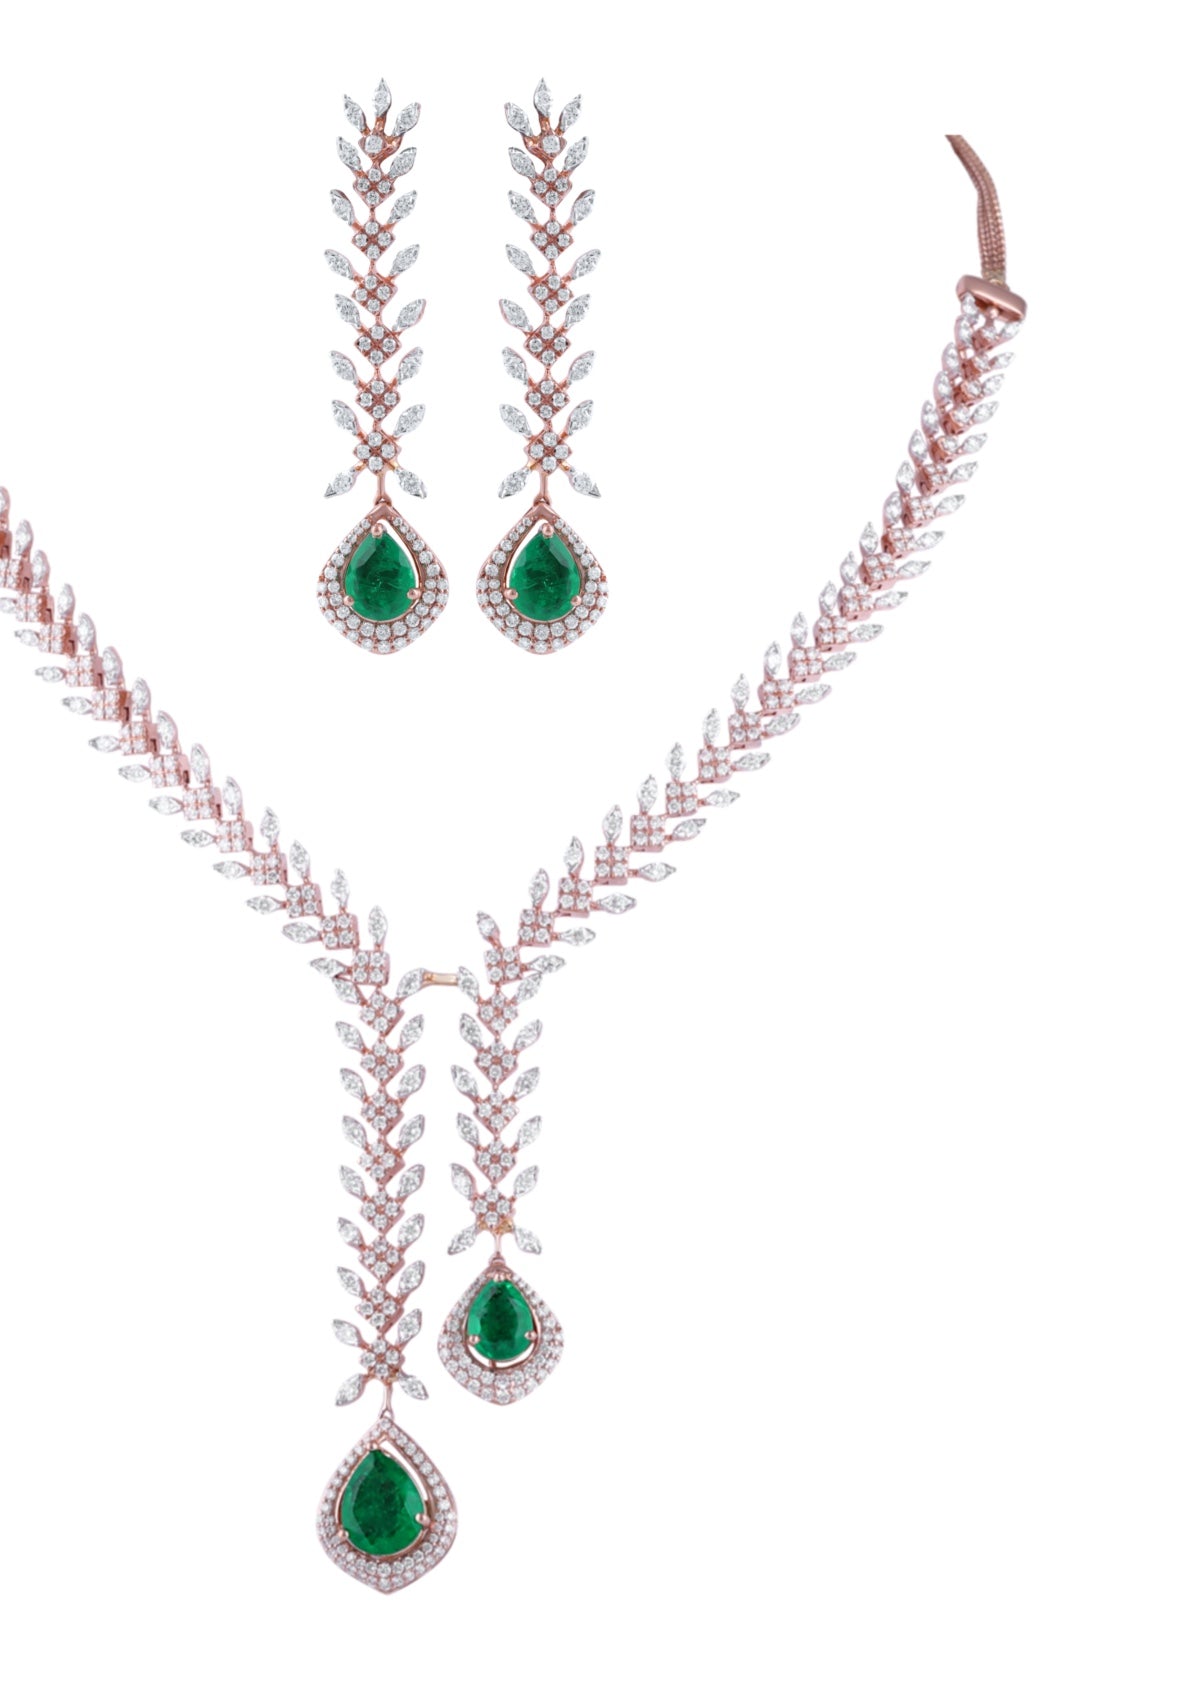 Beautiful Diamond Emerald Necklace